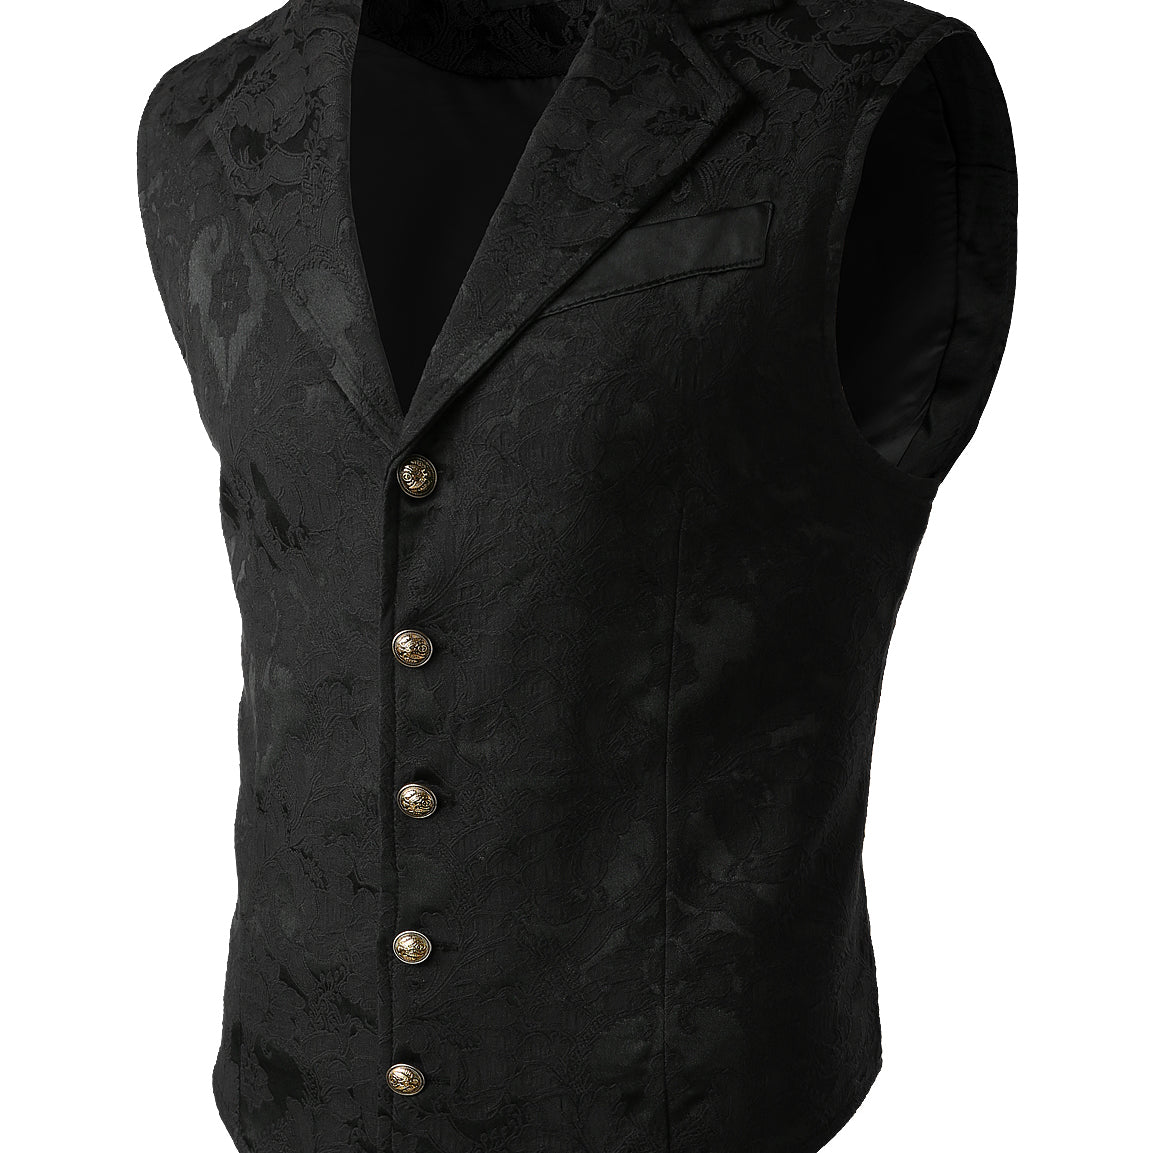 Men's Victorian Suit Vest Steampunk Gothic Waistcoat Vintage Paisley Floral Paisley Vest